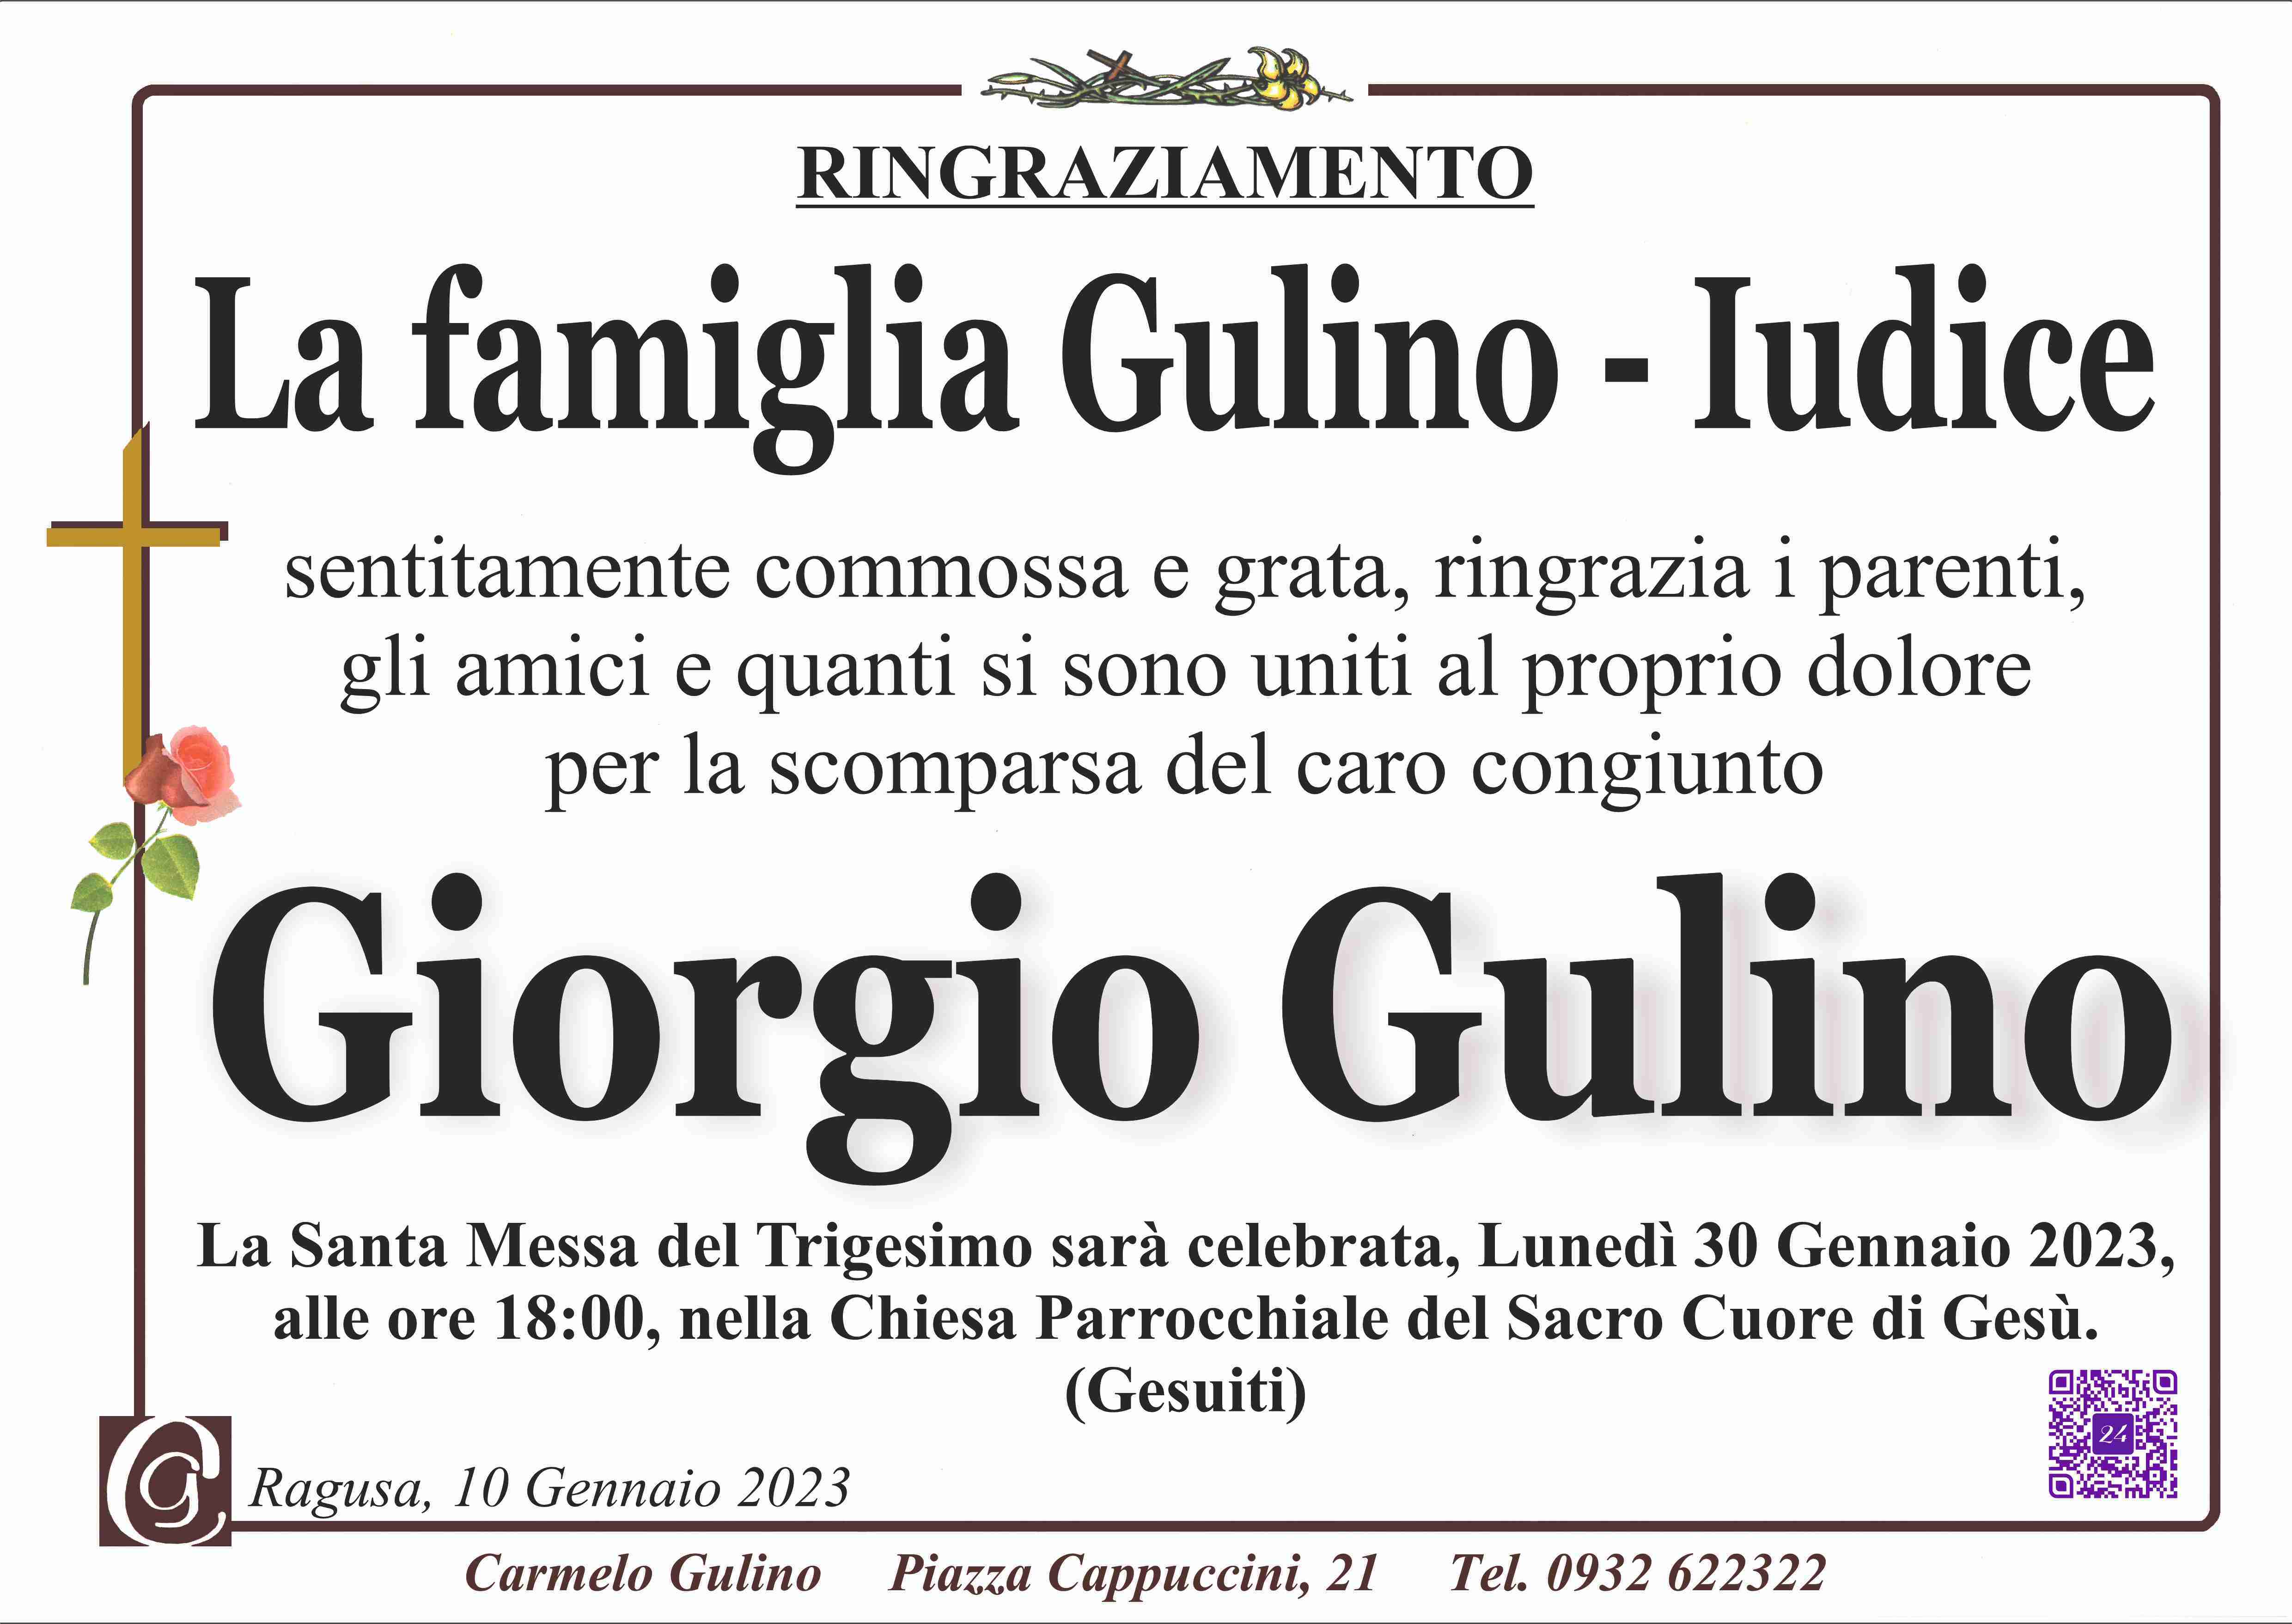 Giorgio Gulino